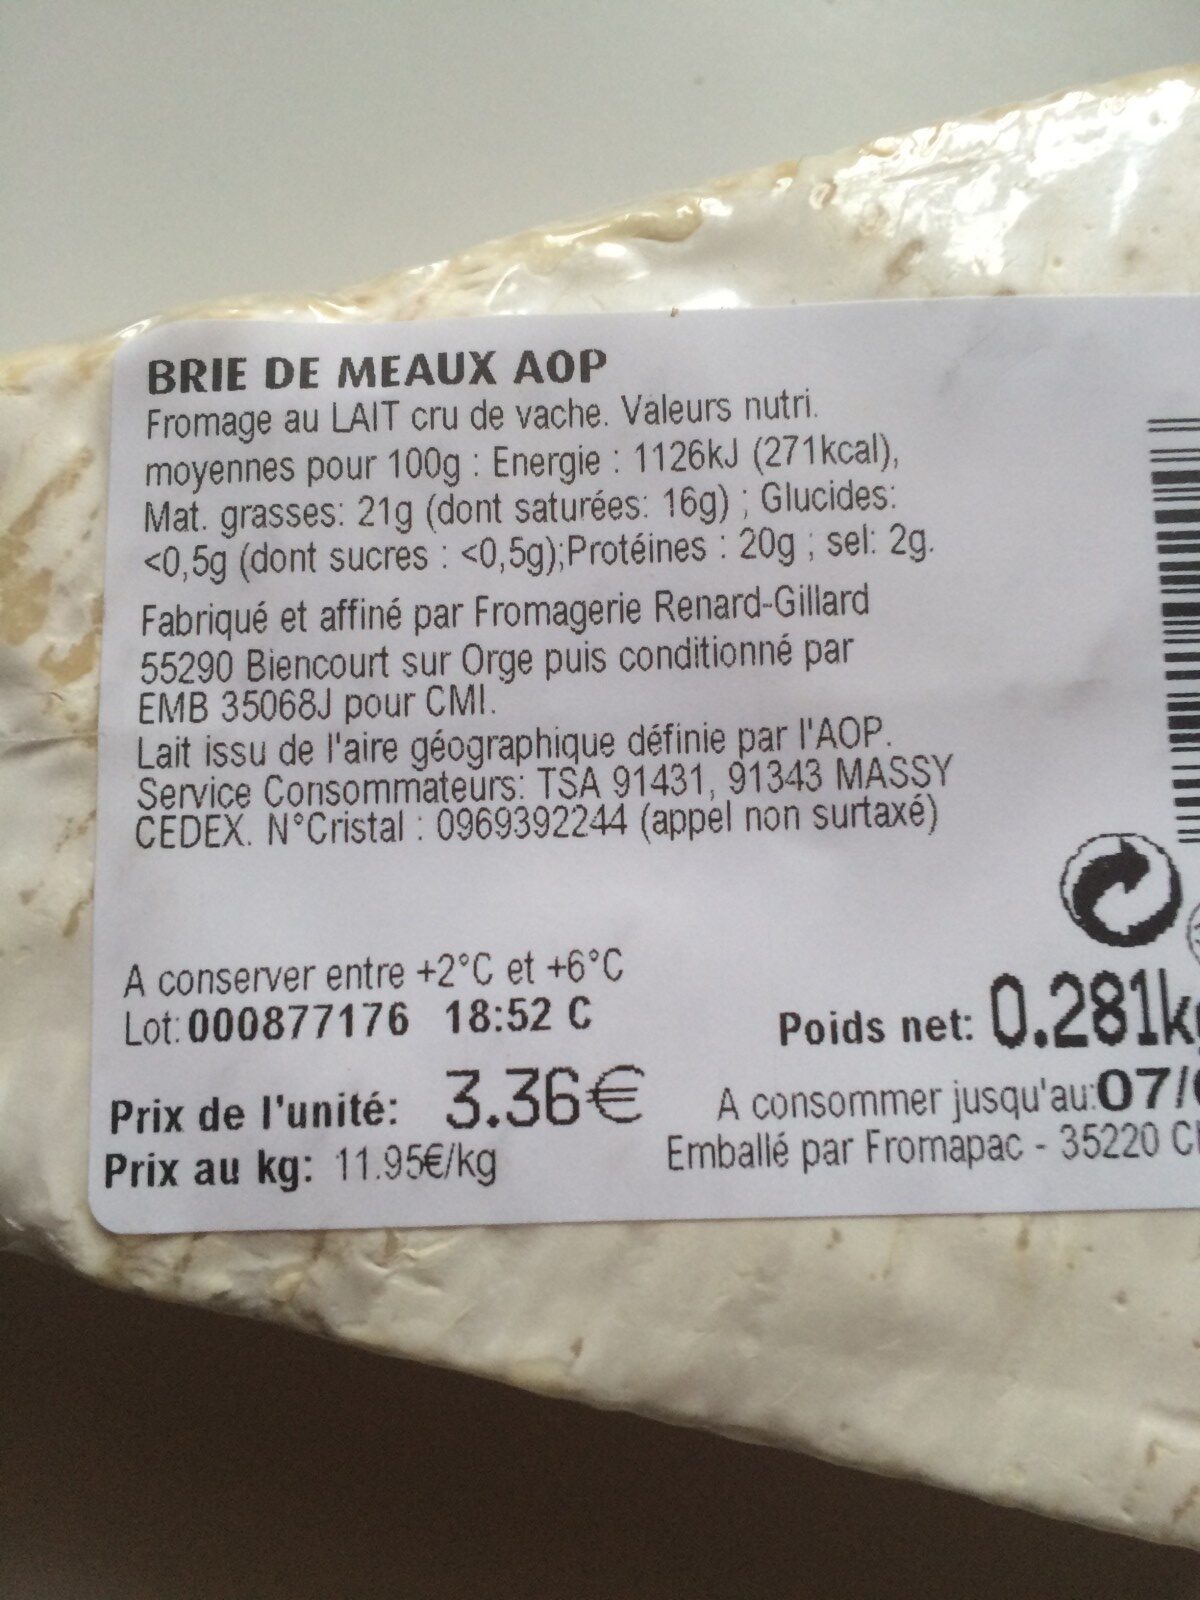 BRIE DE MEAUX AOP AU LAIT CRU - Ingredients - fr